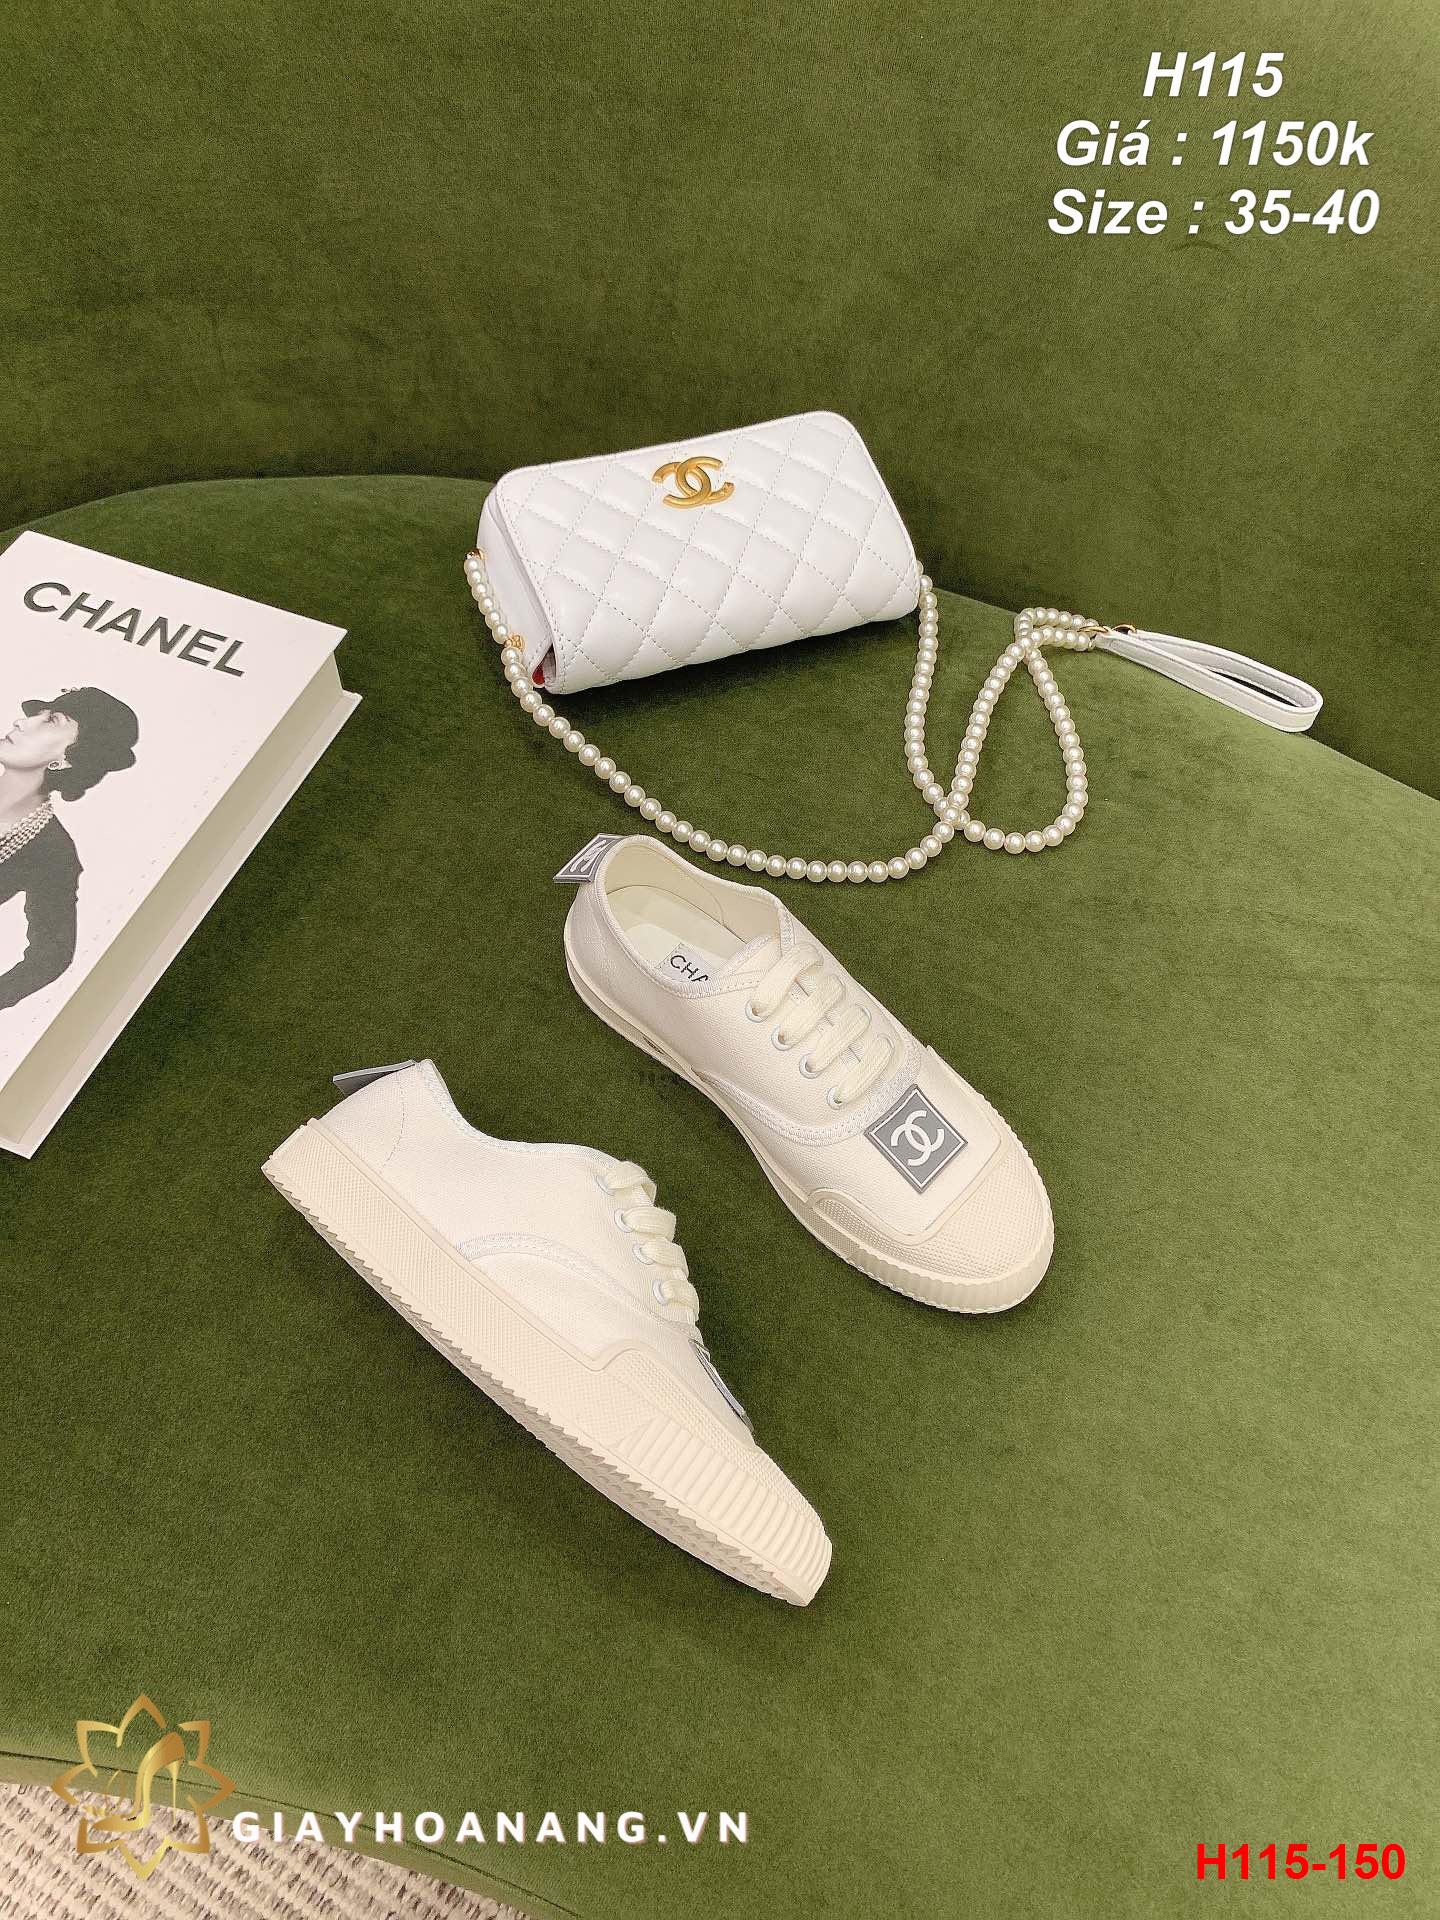 H115-150 Chanel giày thể thao siêu cấp